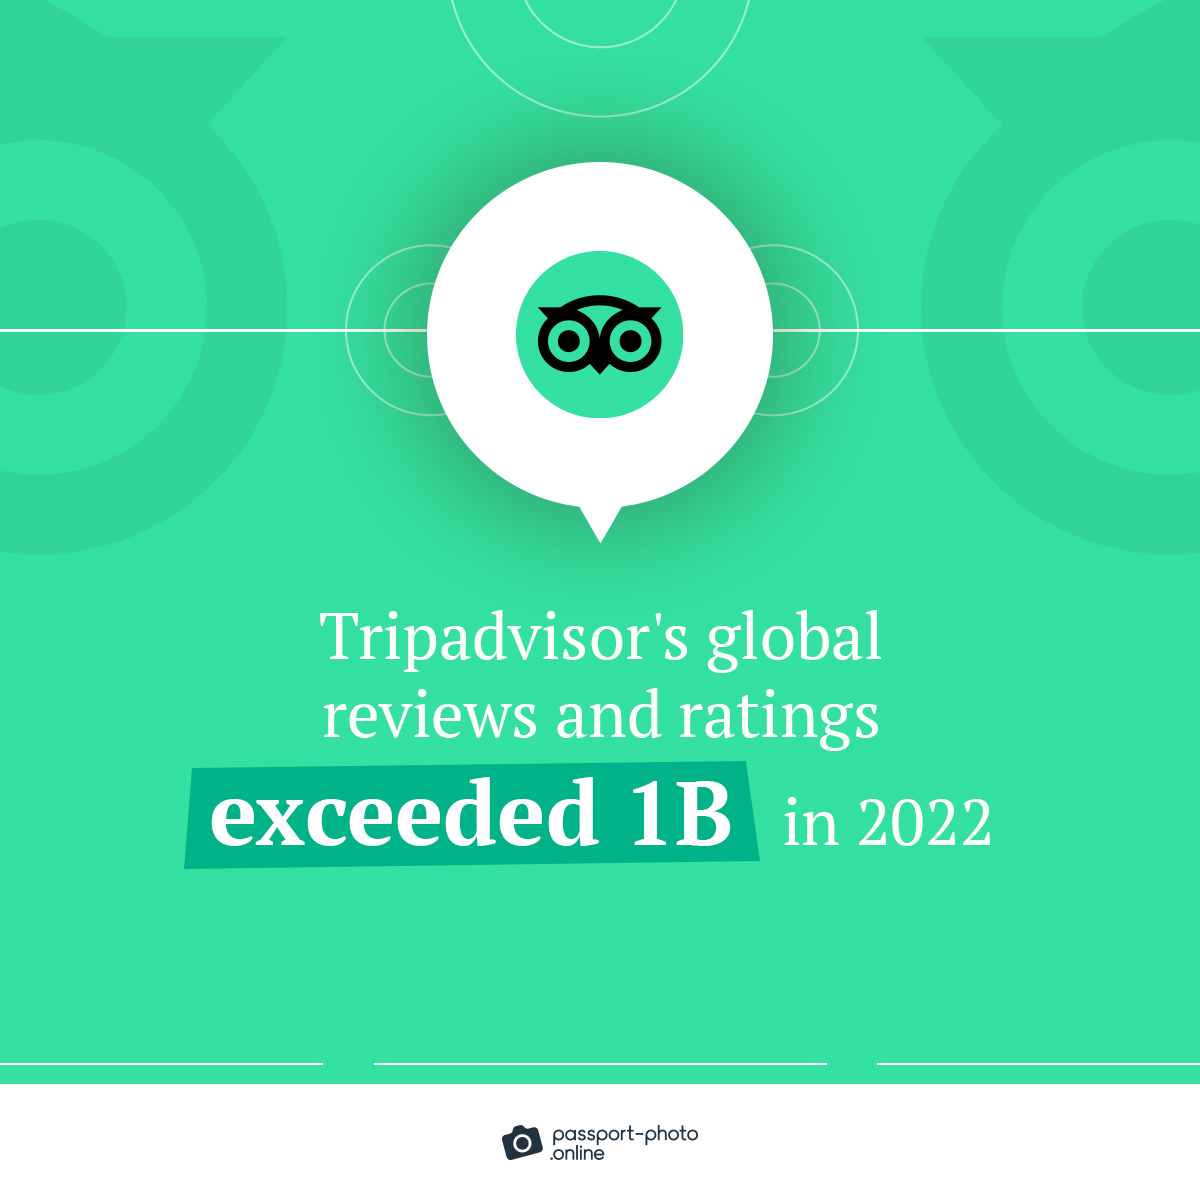 Tripadvisor's reviews and ratings surpassed 1B in 2022